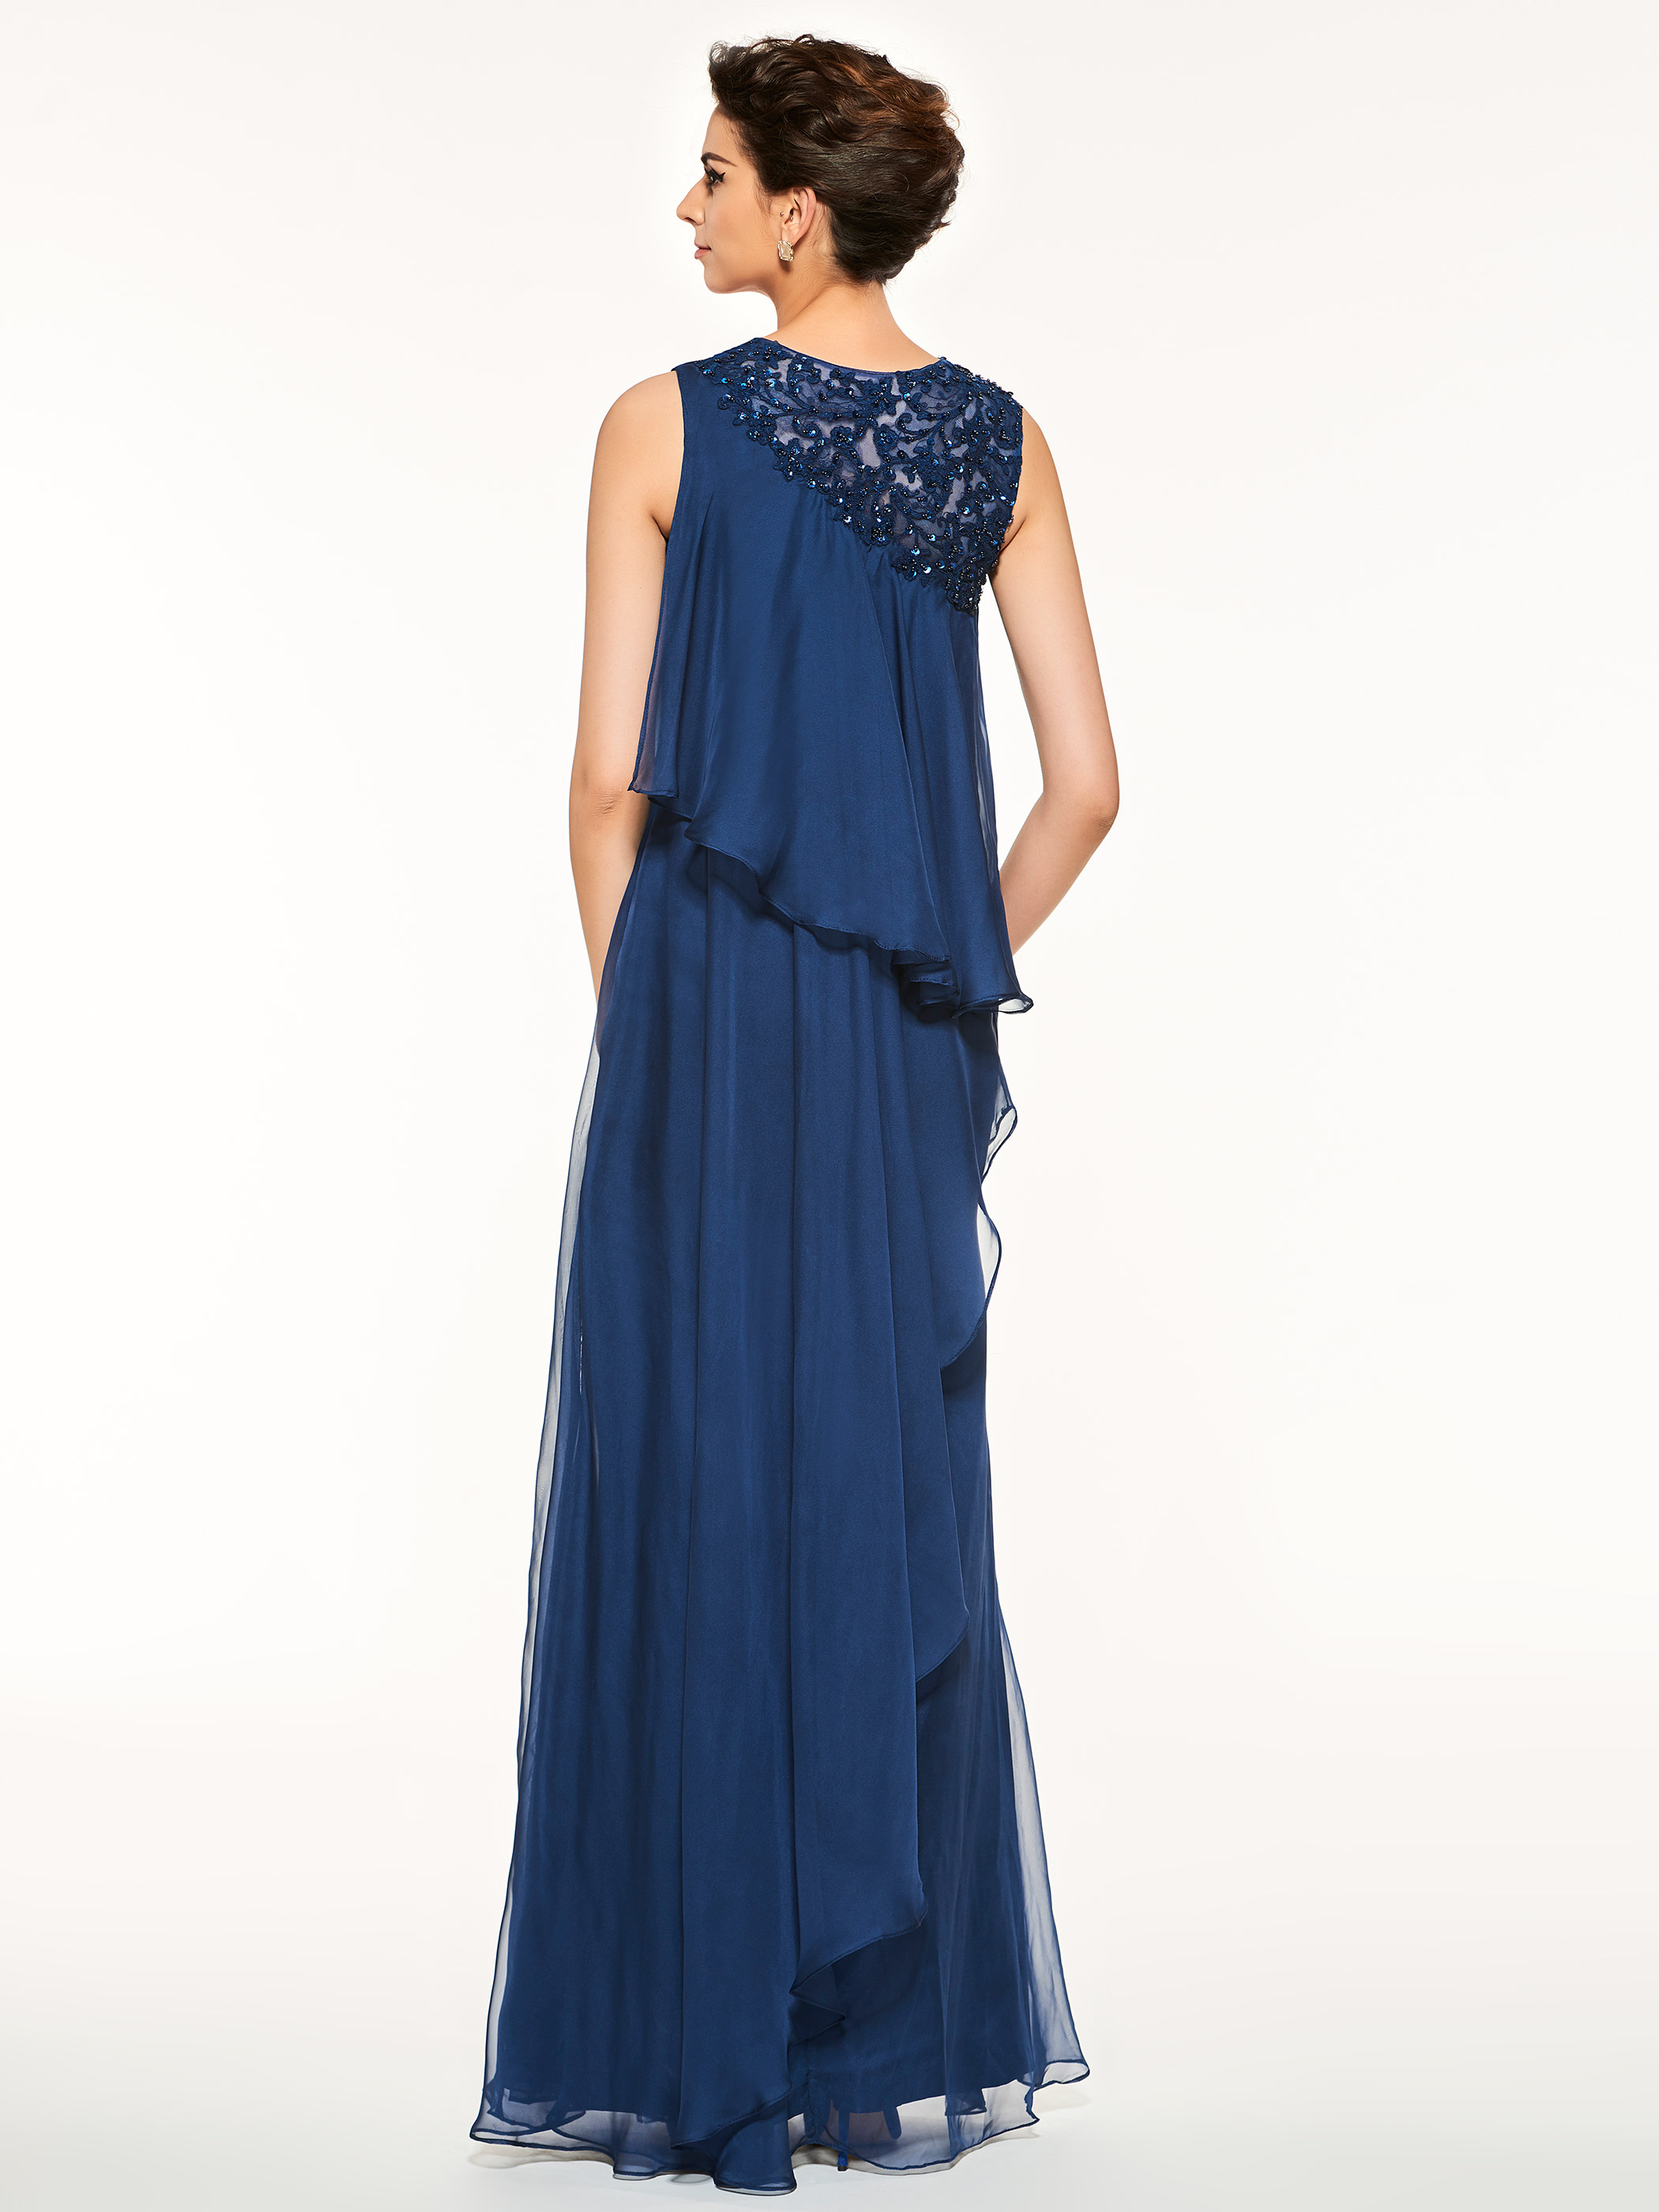 Sleeveless Floor-Length Jewel Beading Evening Dress Blue Long Dress Mother of the Bride Dress Wedding Guest Dress